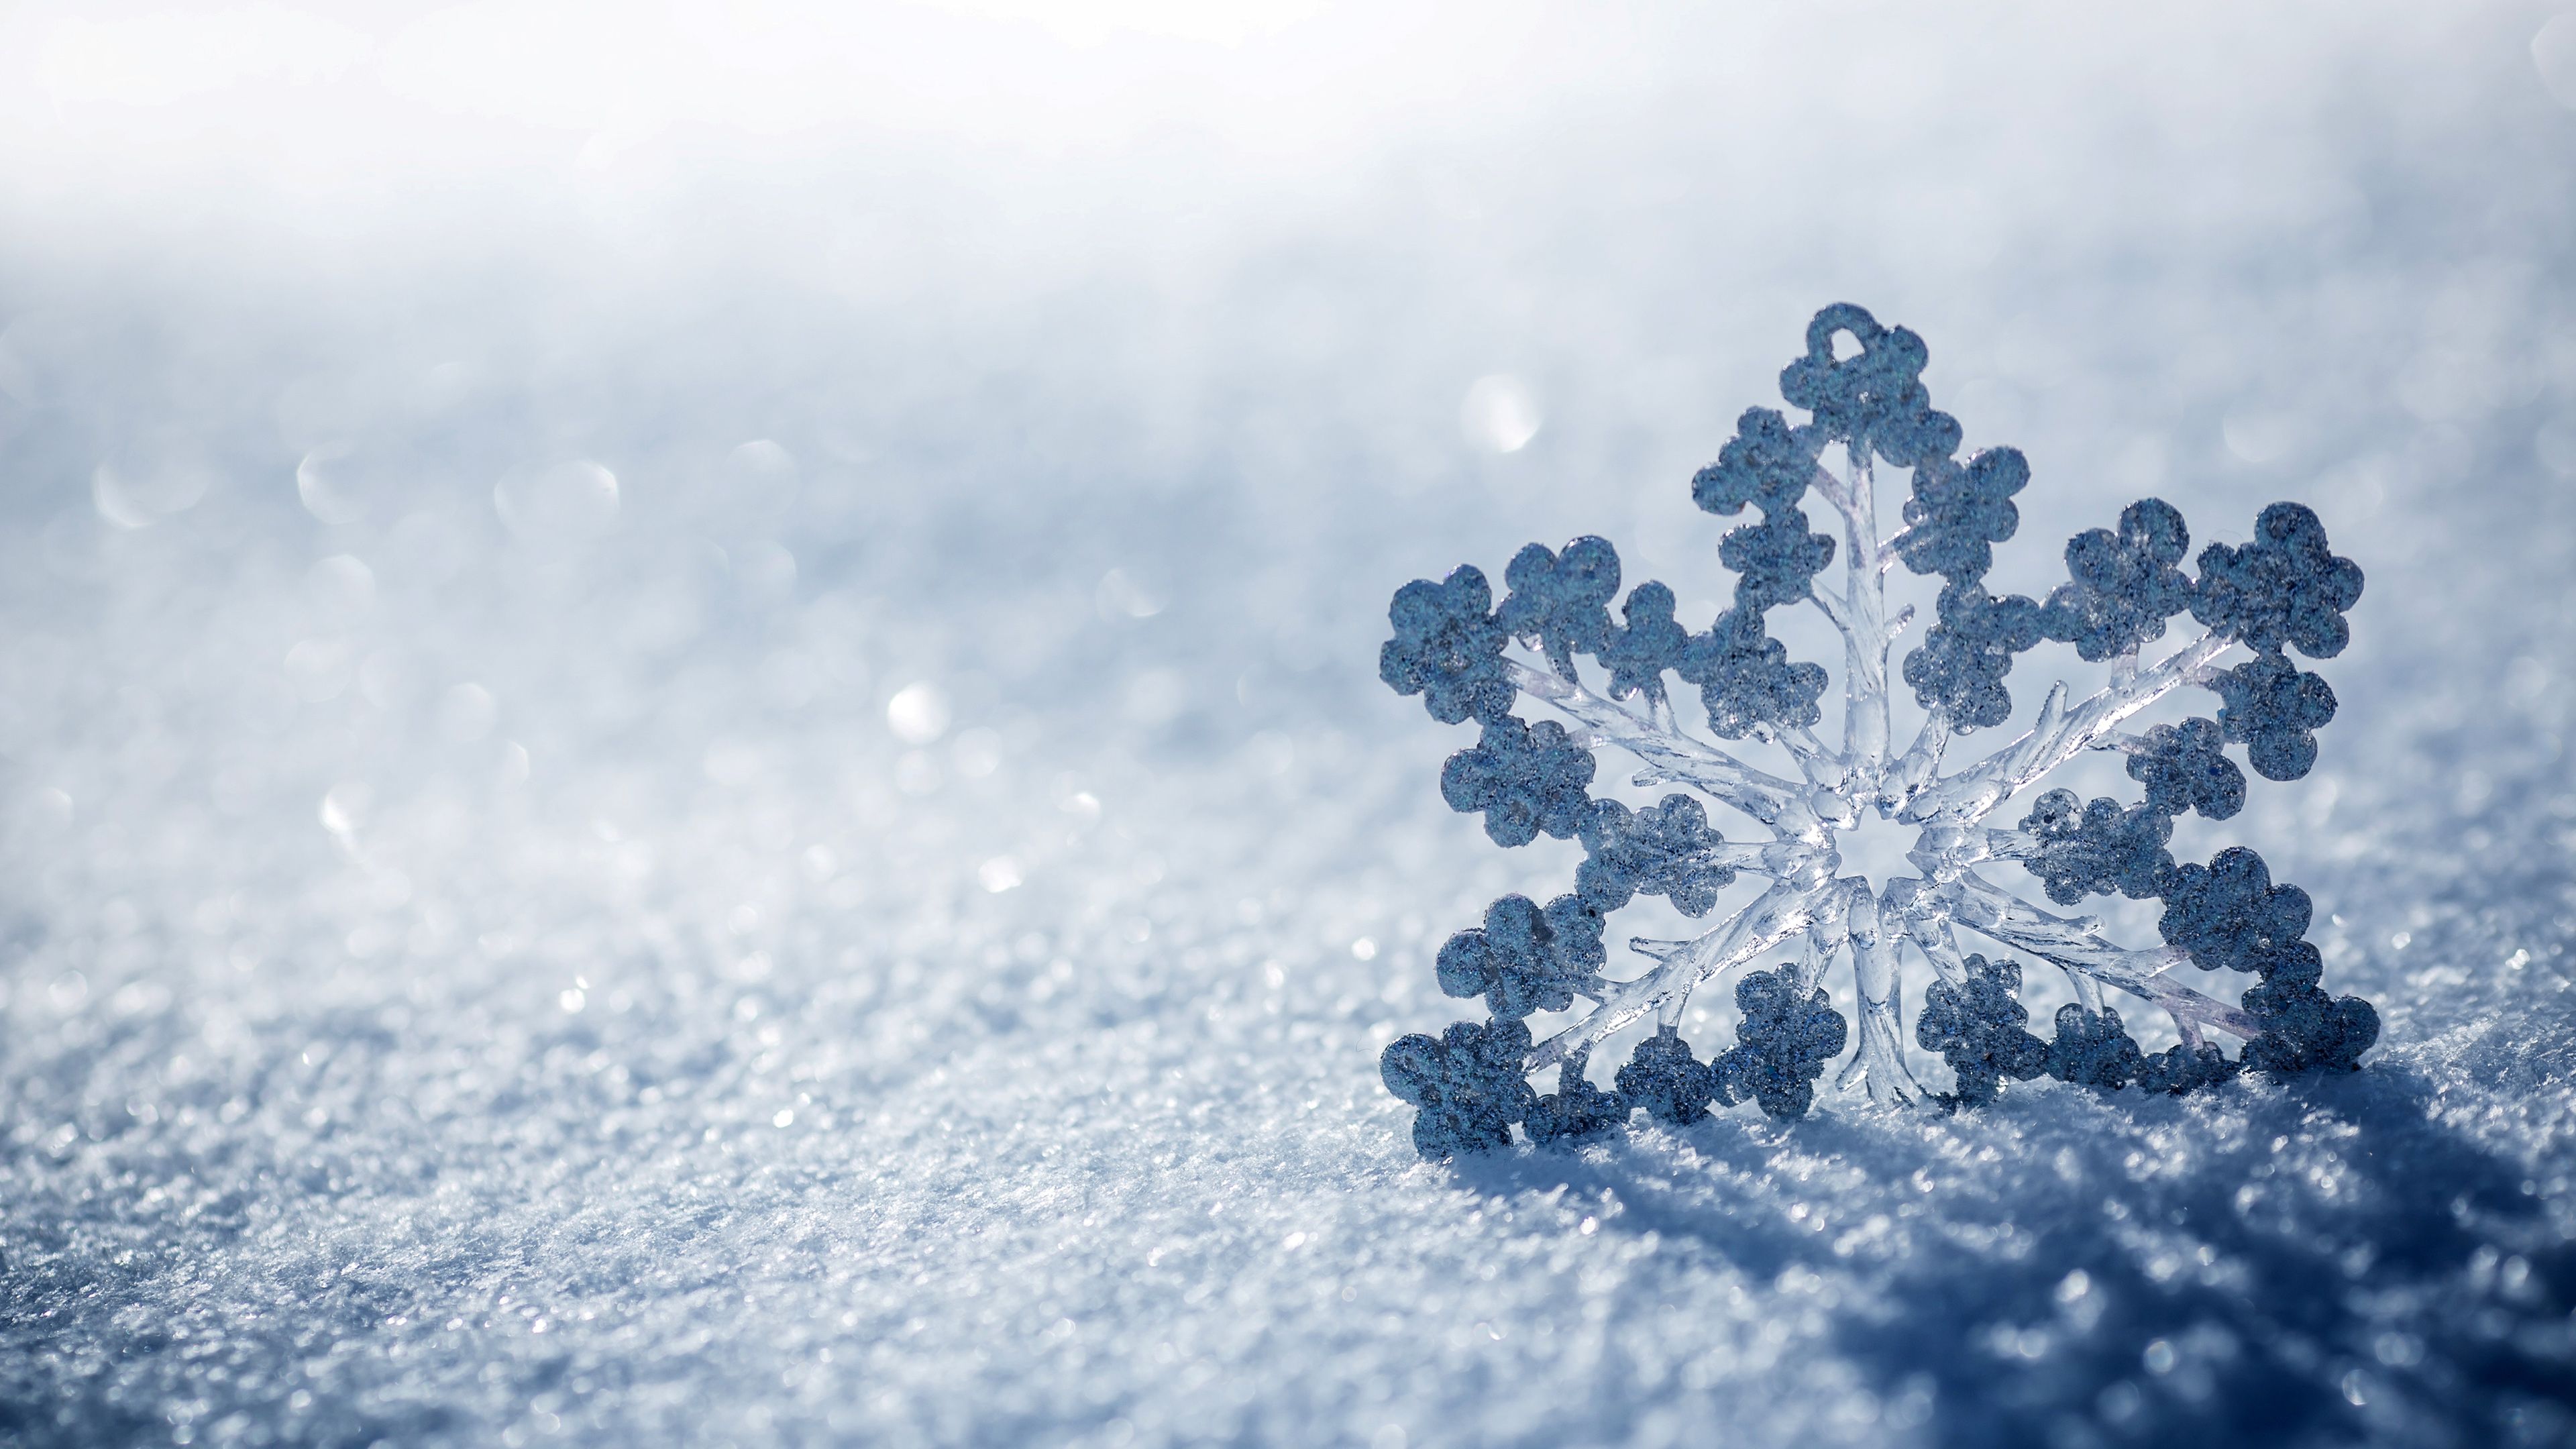 Snowflake on the snow - Snowflake